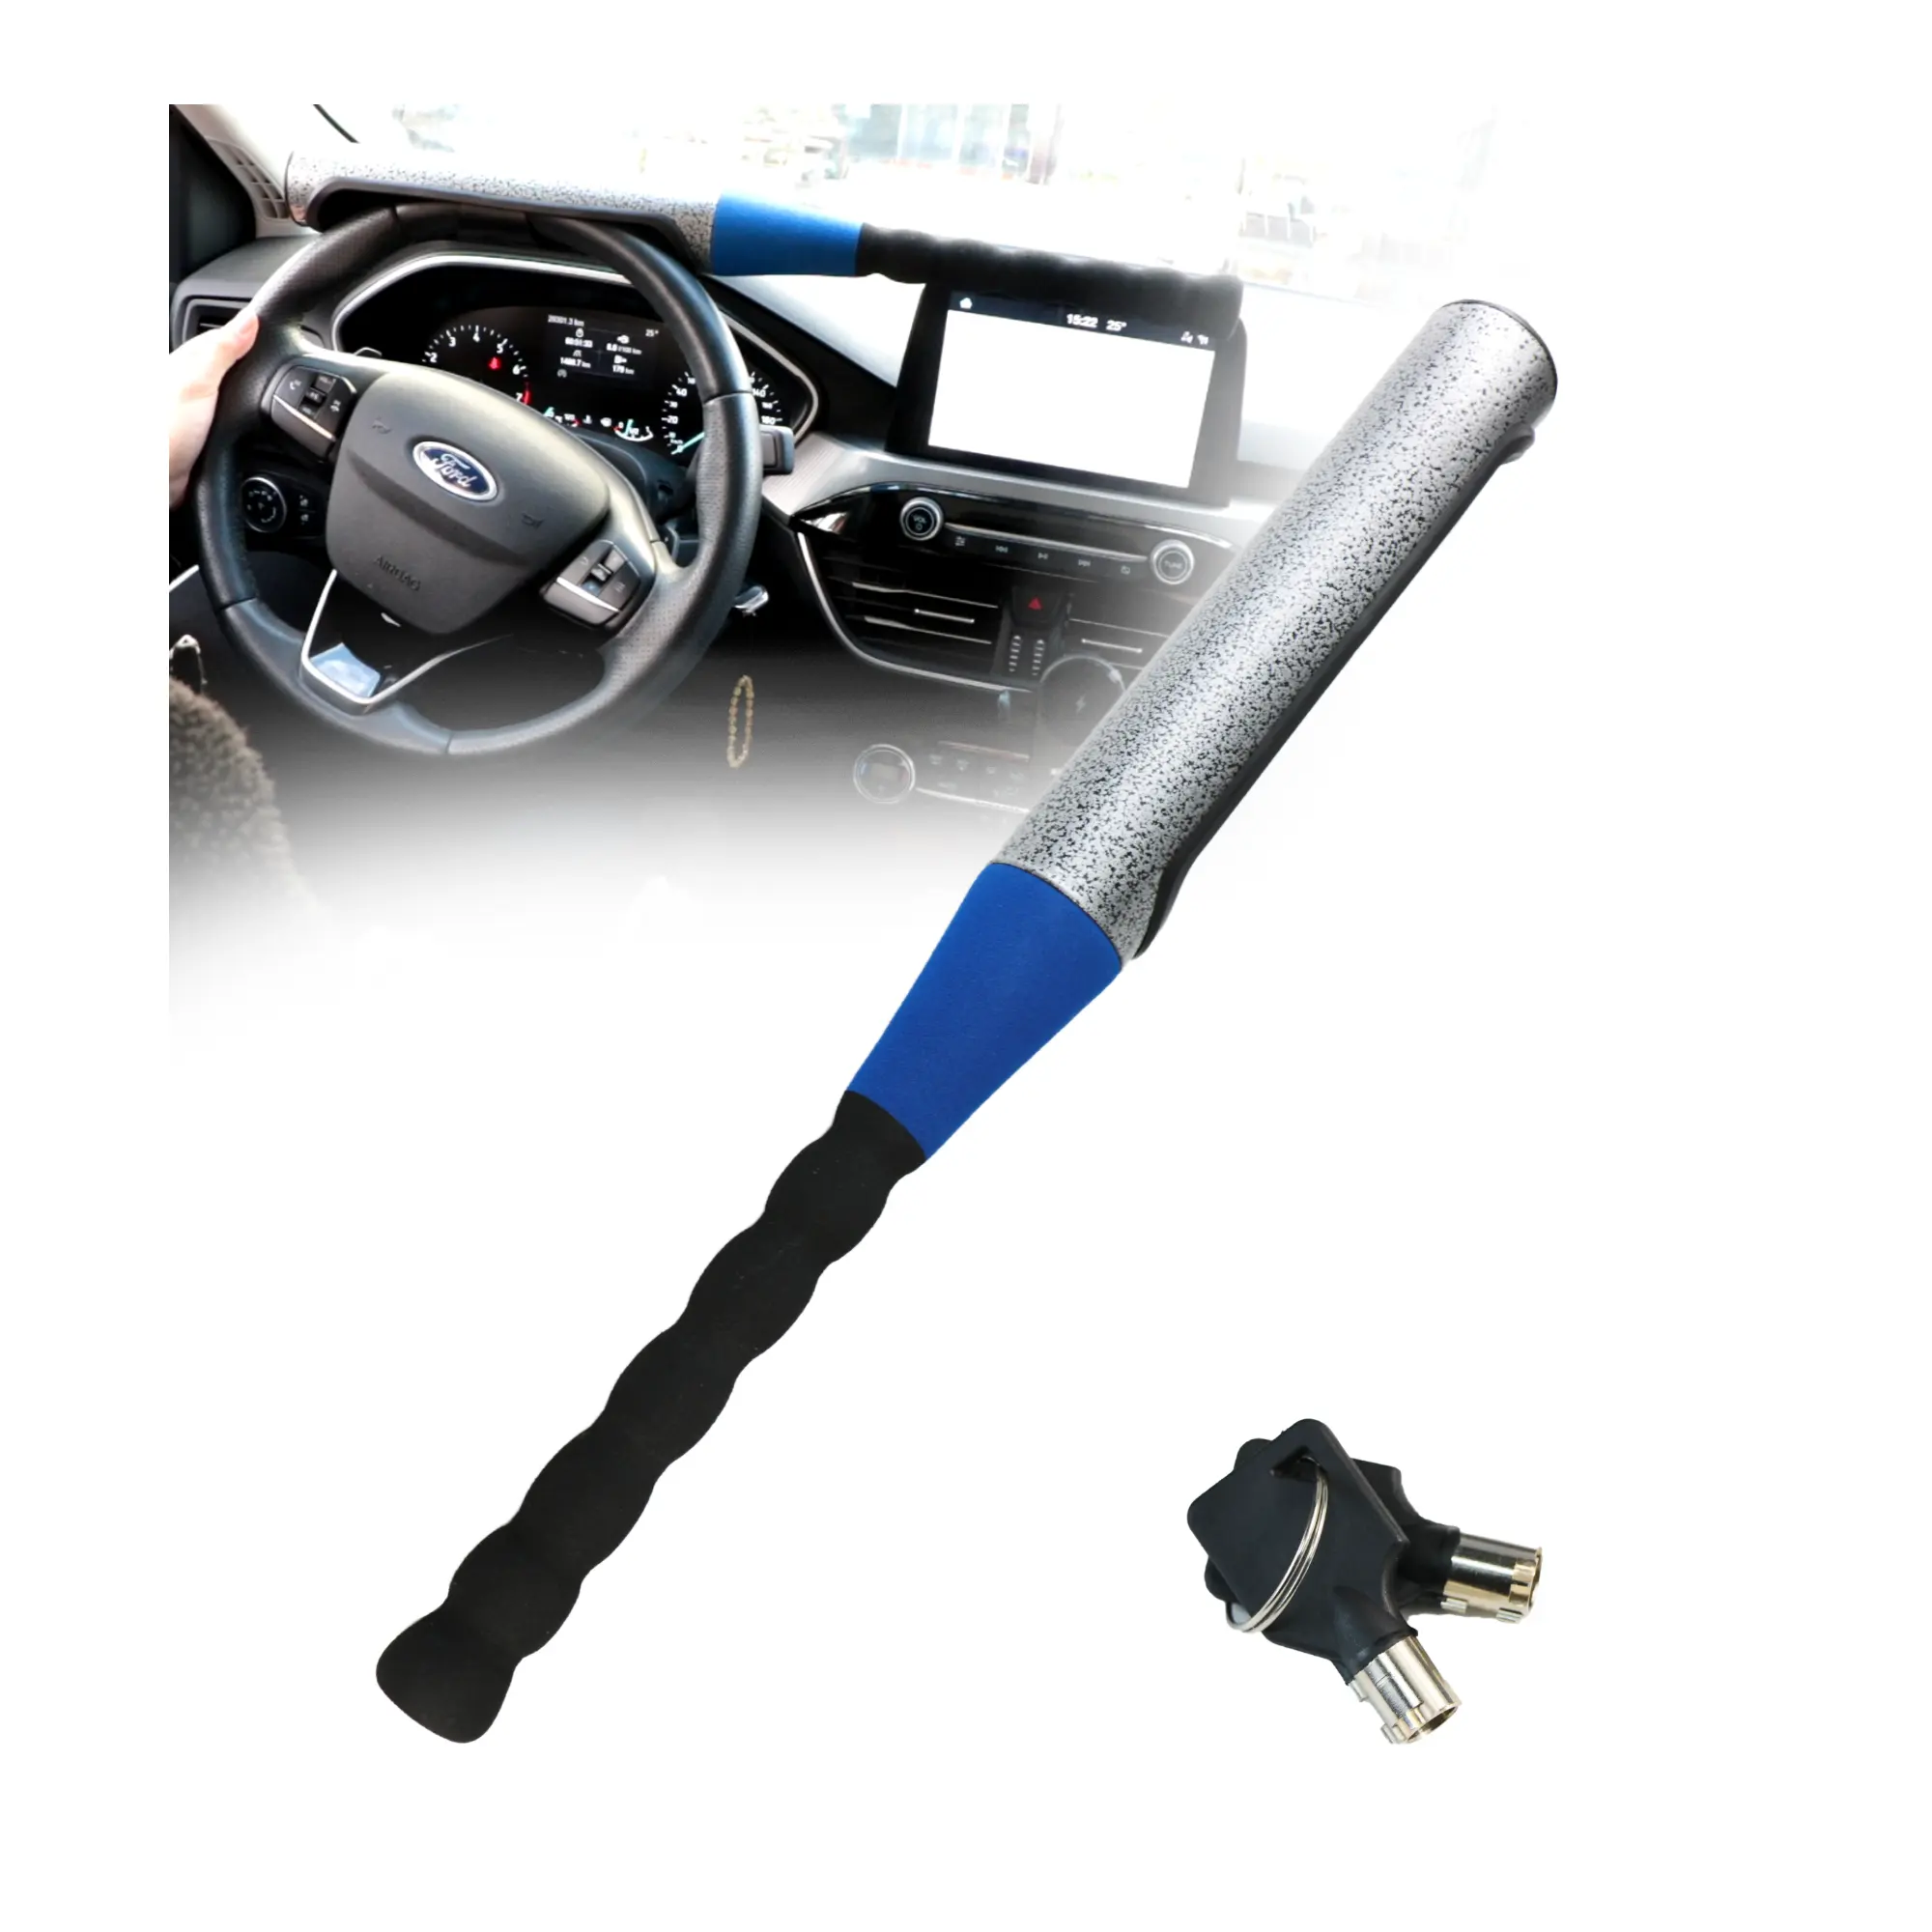 Kunci roda mobil Manual Anti Maling, tongkat pemukul bisbol, bahan berat, kunci roda kemudi, Manual Anti Maling